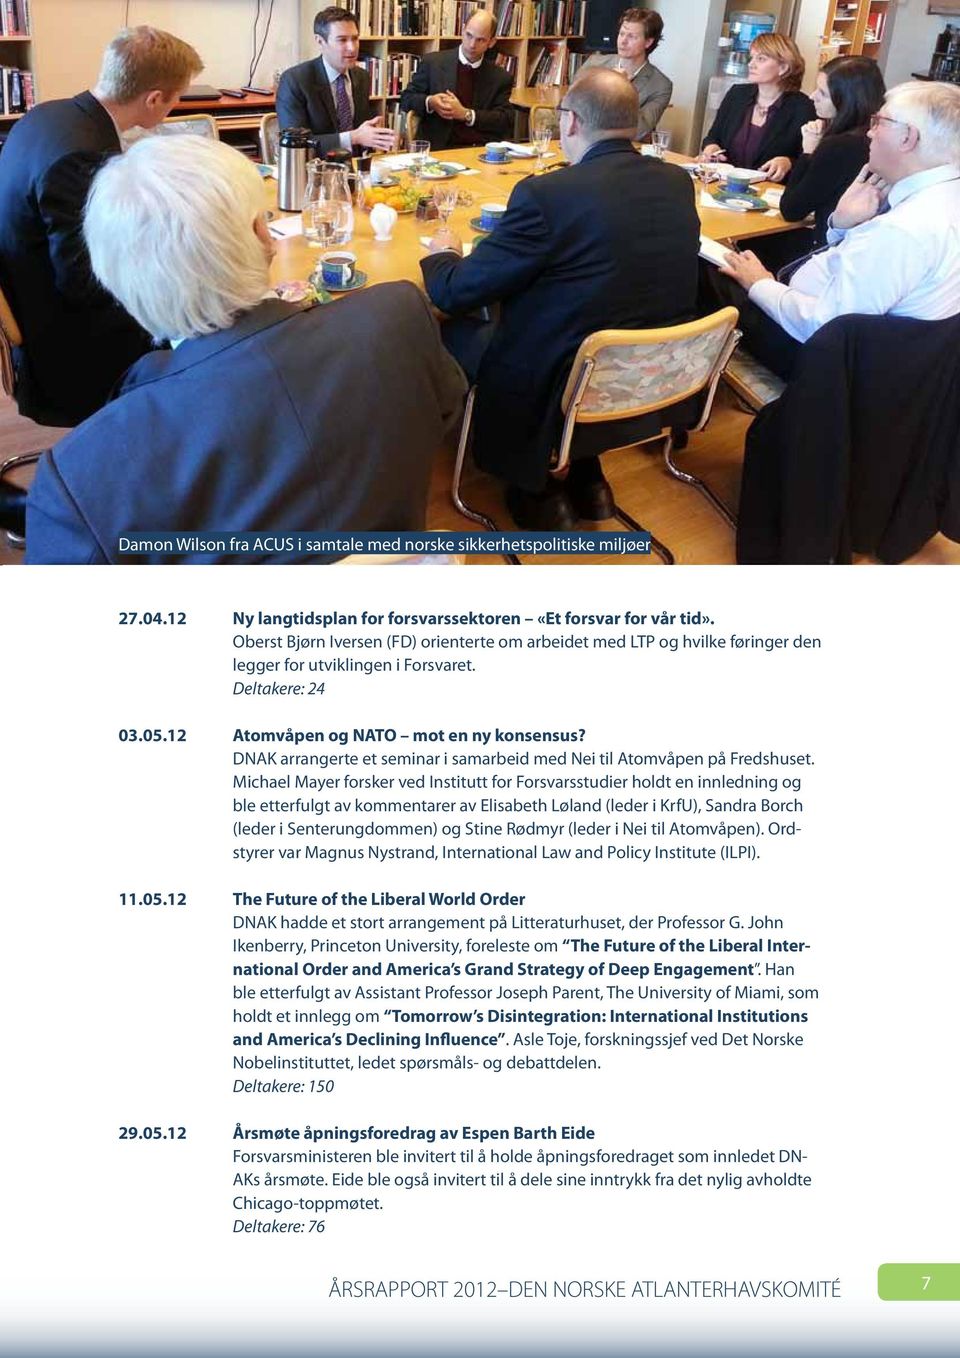 DNAK arrangerte et seminar i samarbeid med Nei til Atomvåpen på Fredshuset.